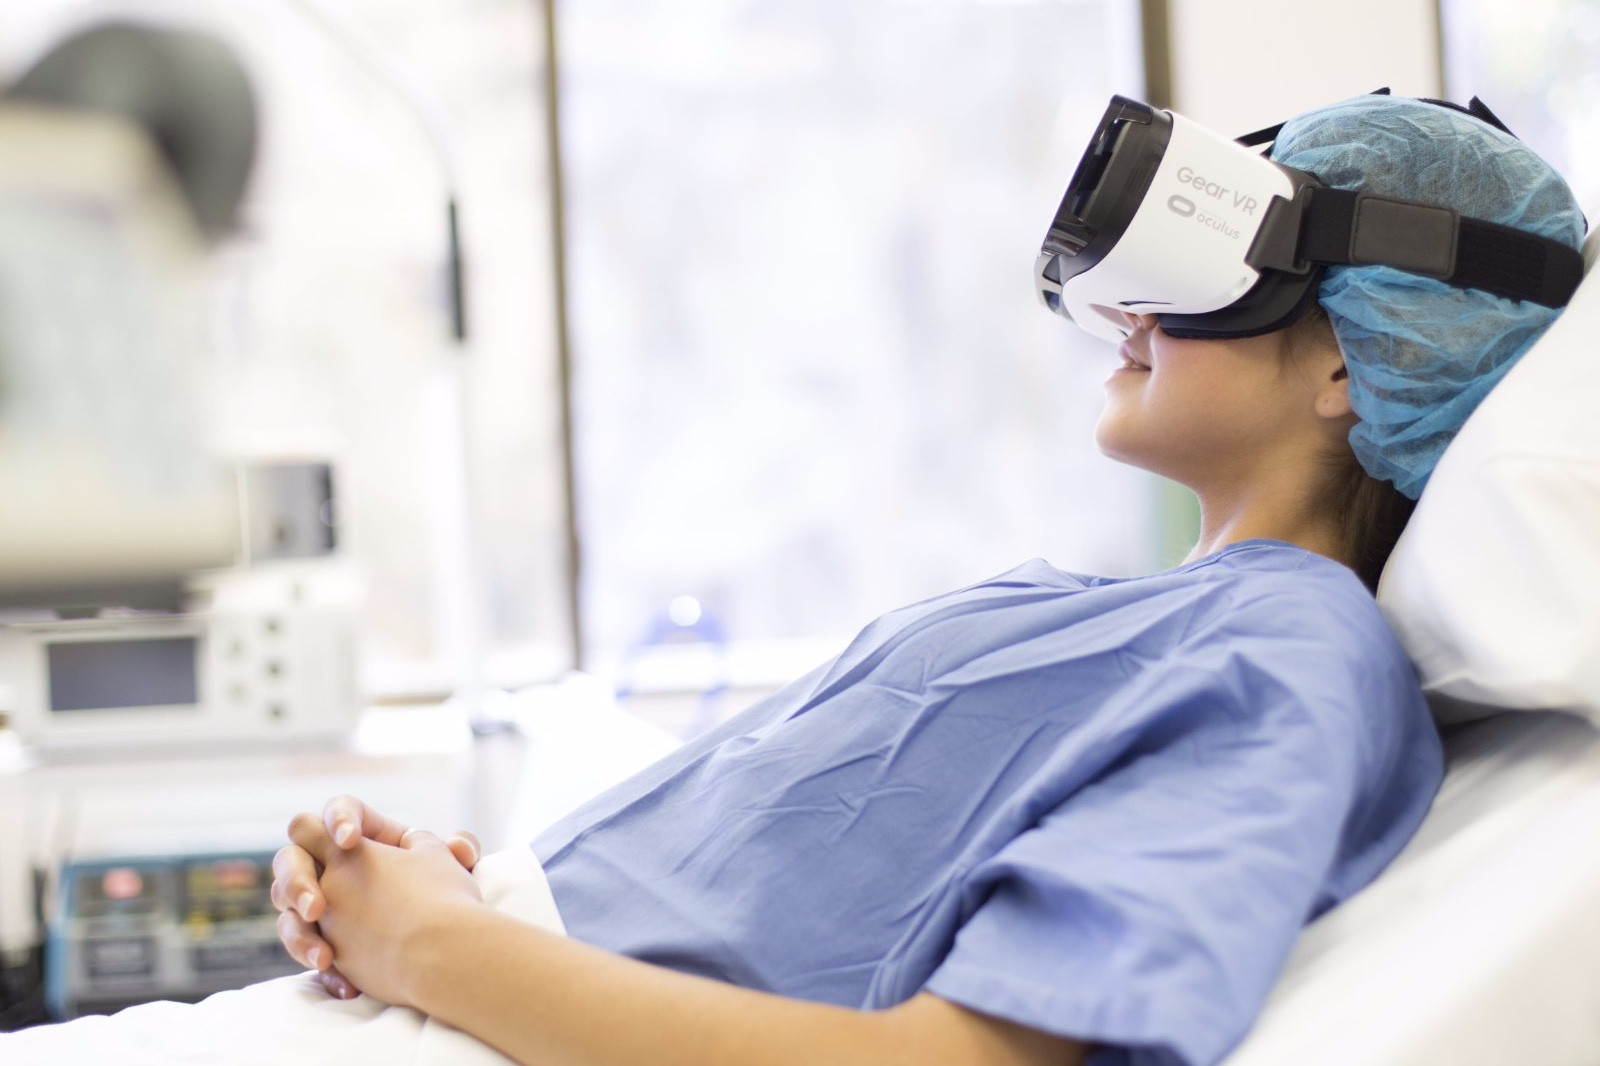 Vr testing. Очки виртуальной реальности в медицине. VR В медицине. Технологии виртуальной реальности в медицине. VR технологии в медицине.